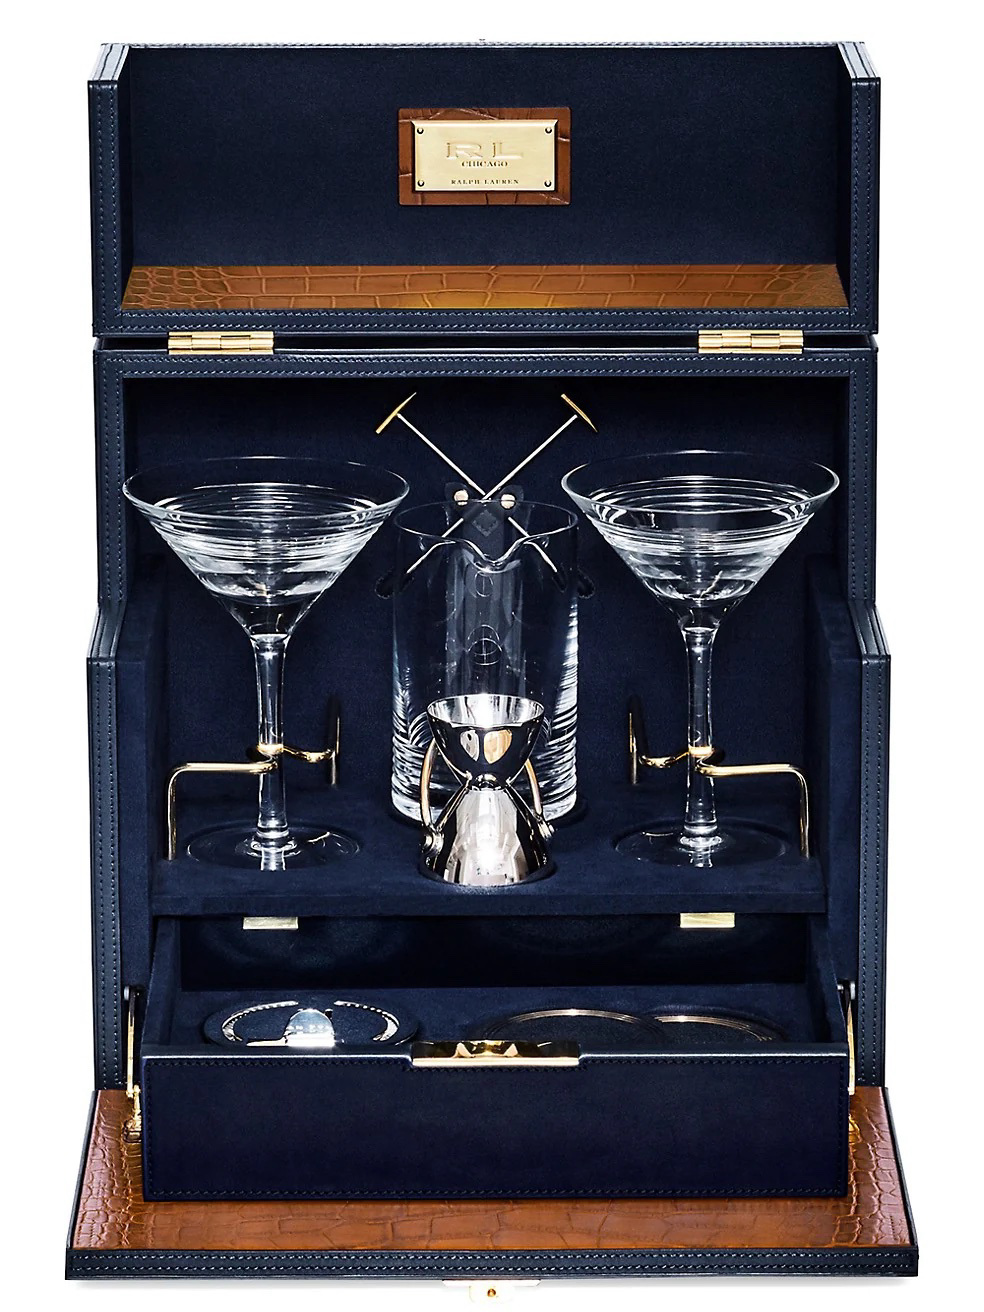 Ralph Lauren cocktails